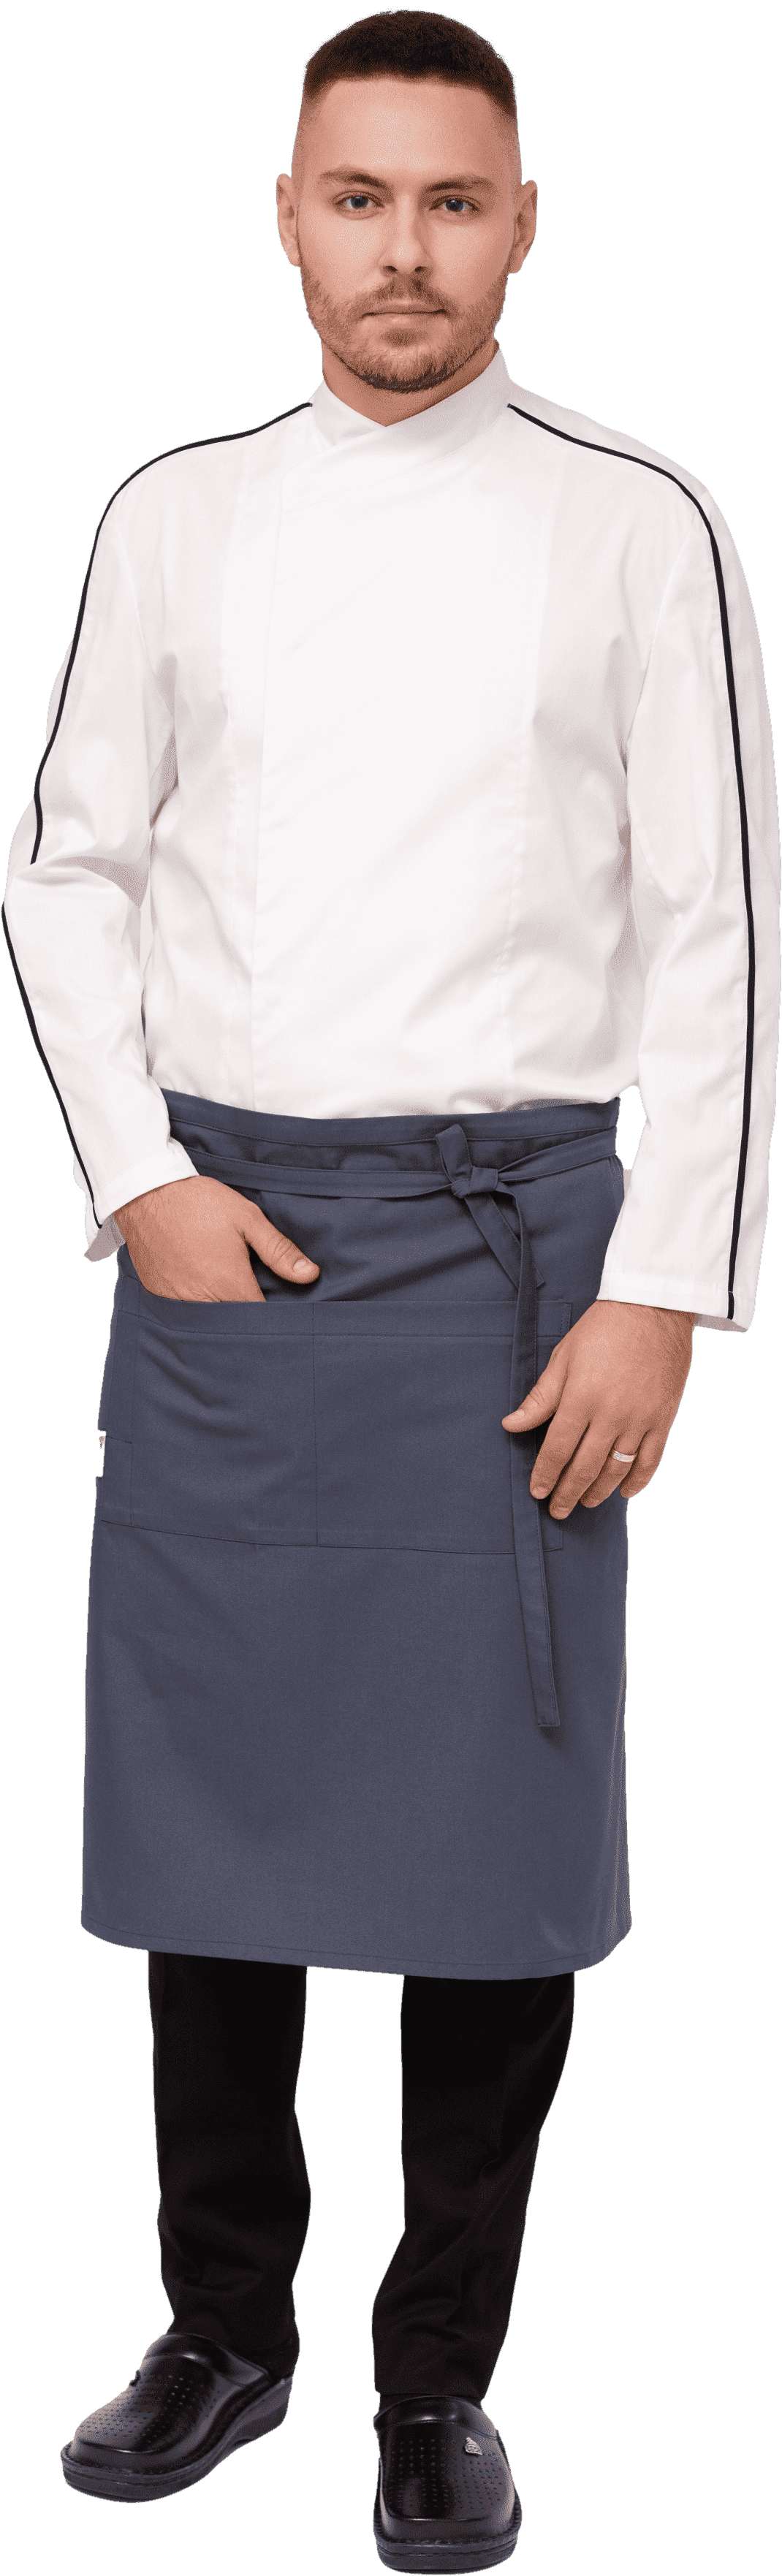 Комплект для повара JACSON - китель / фартук / брюки мужской